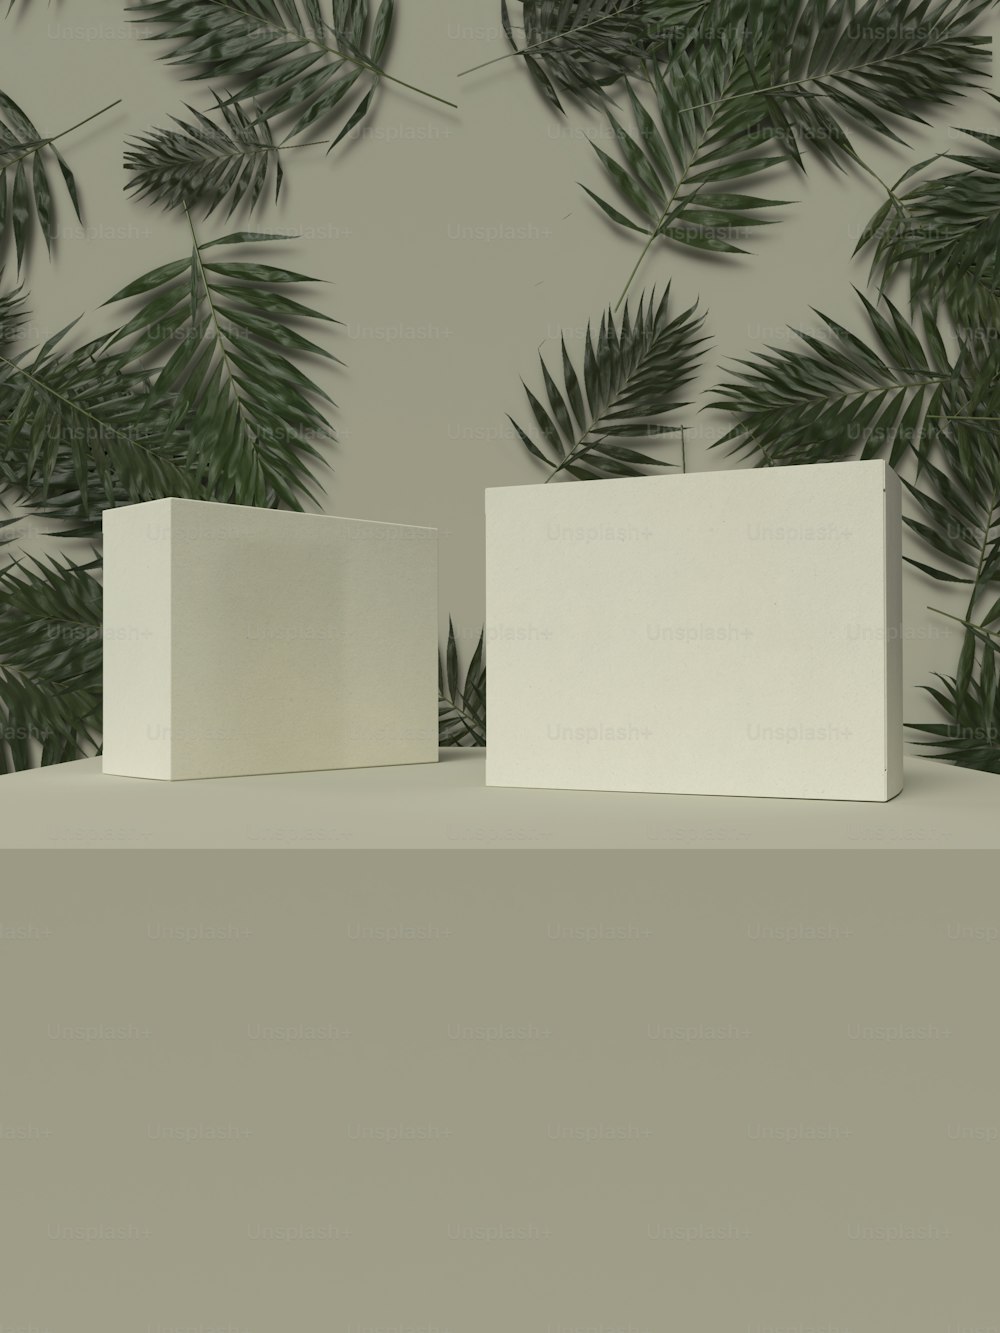 Dos cajas blancas sentadas encima de una mesa